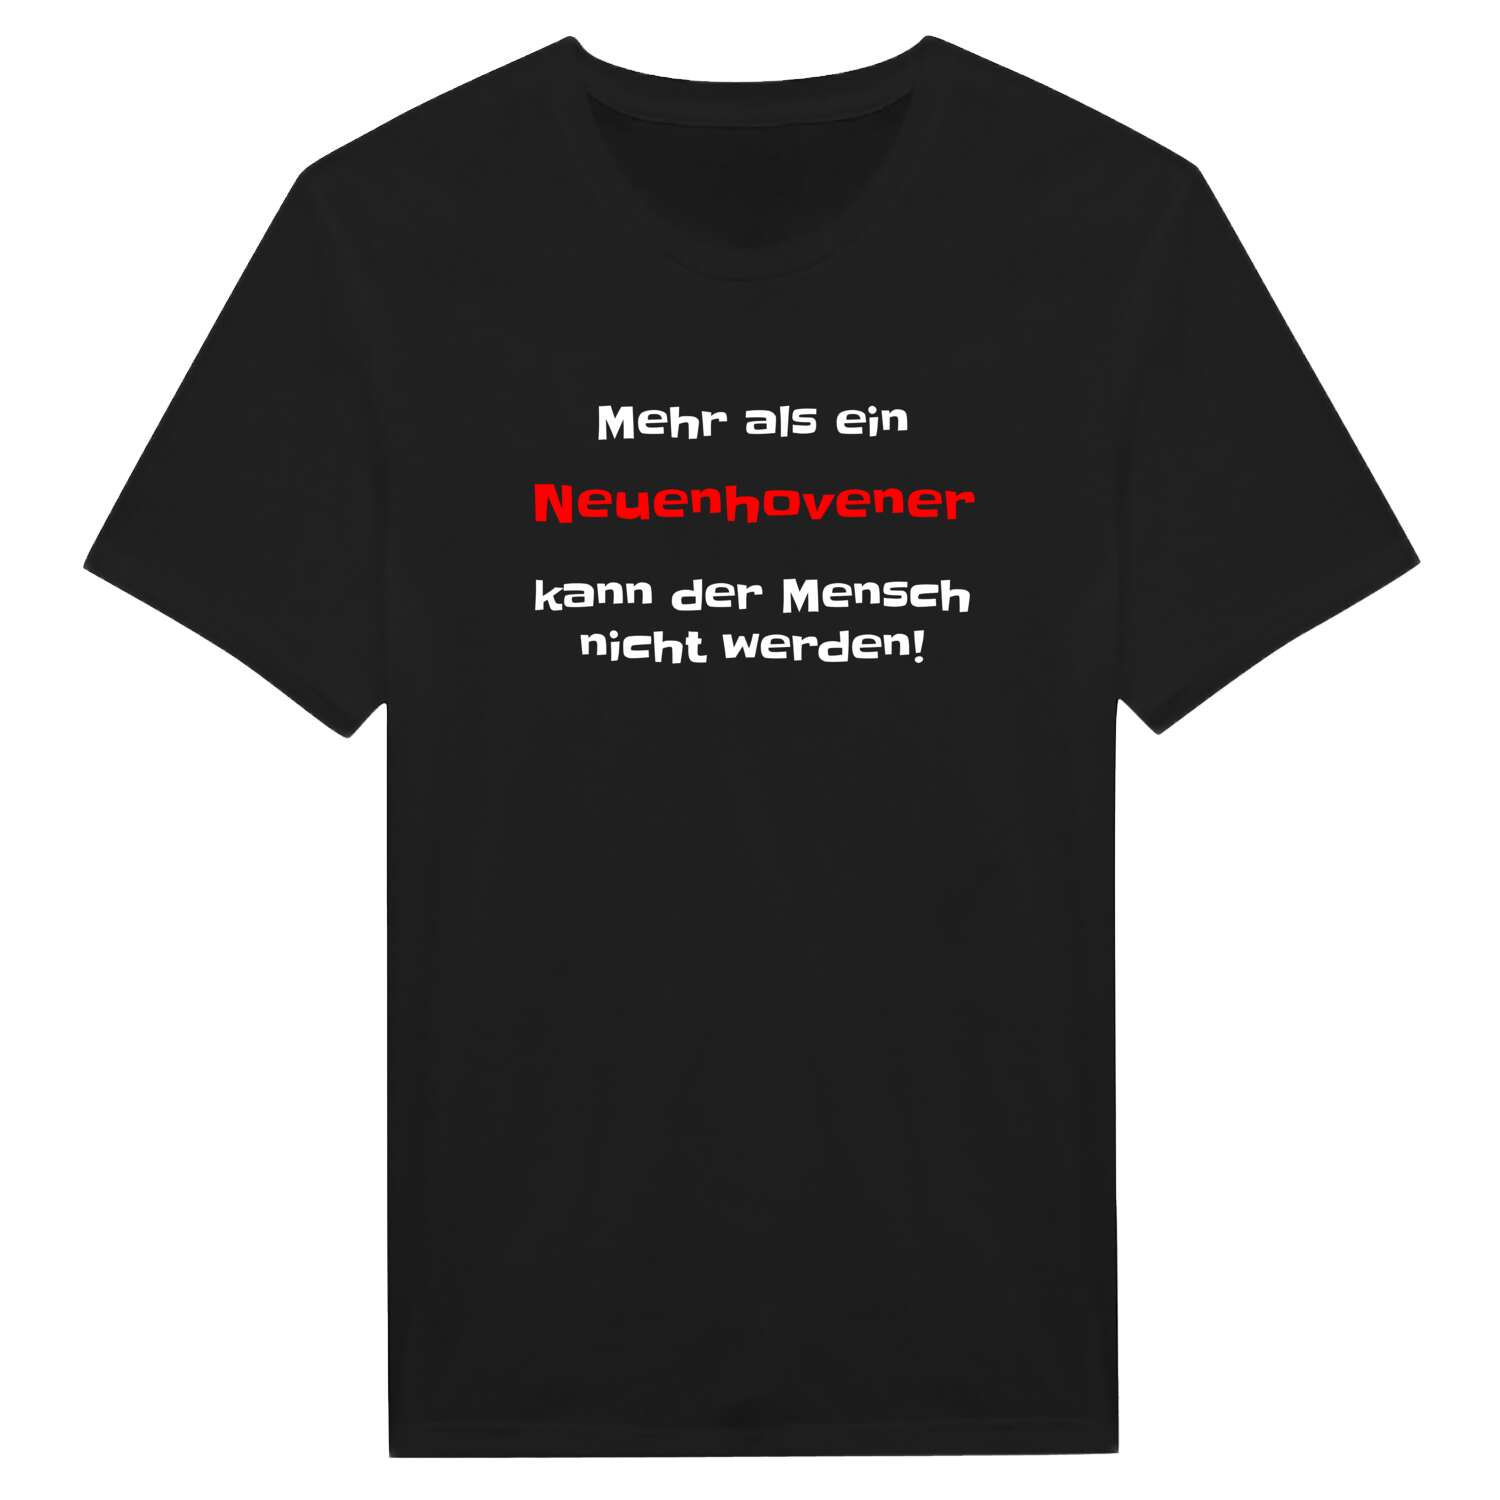 Neuenhoven T-Shirt »Mehr als ein«